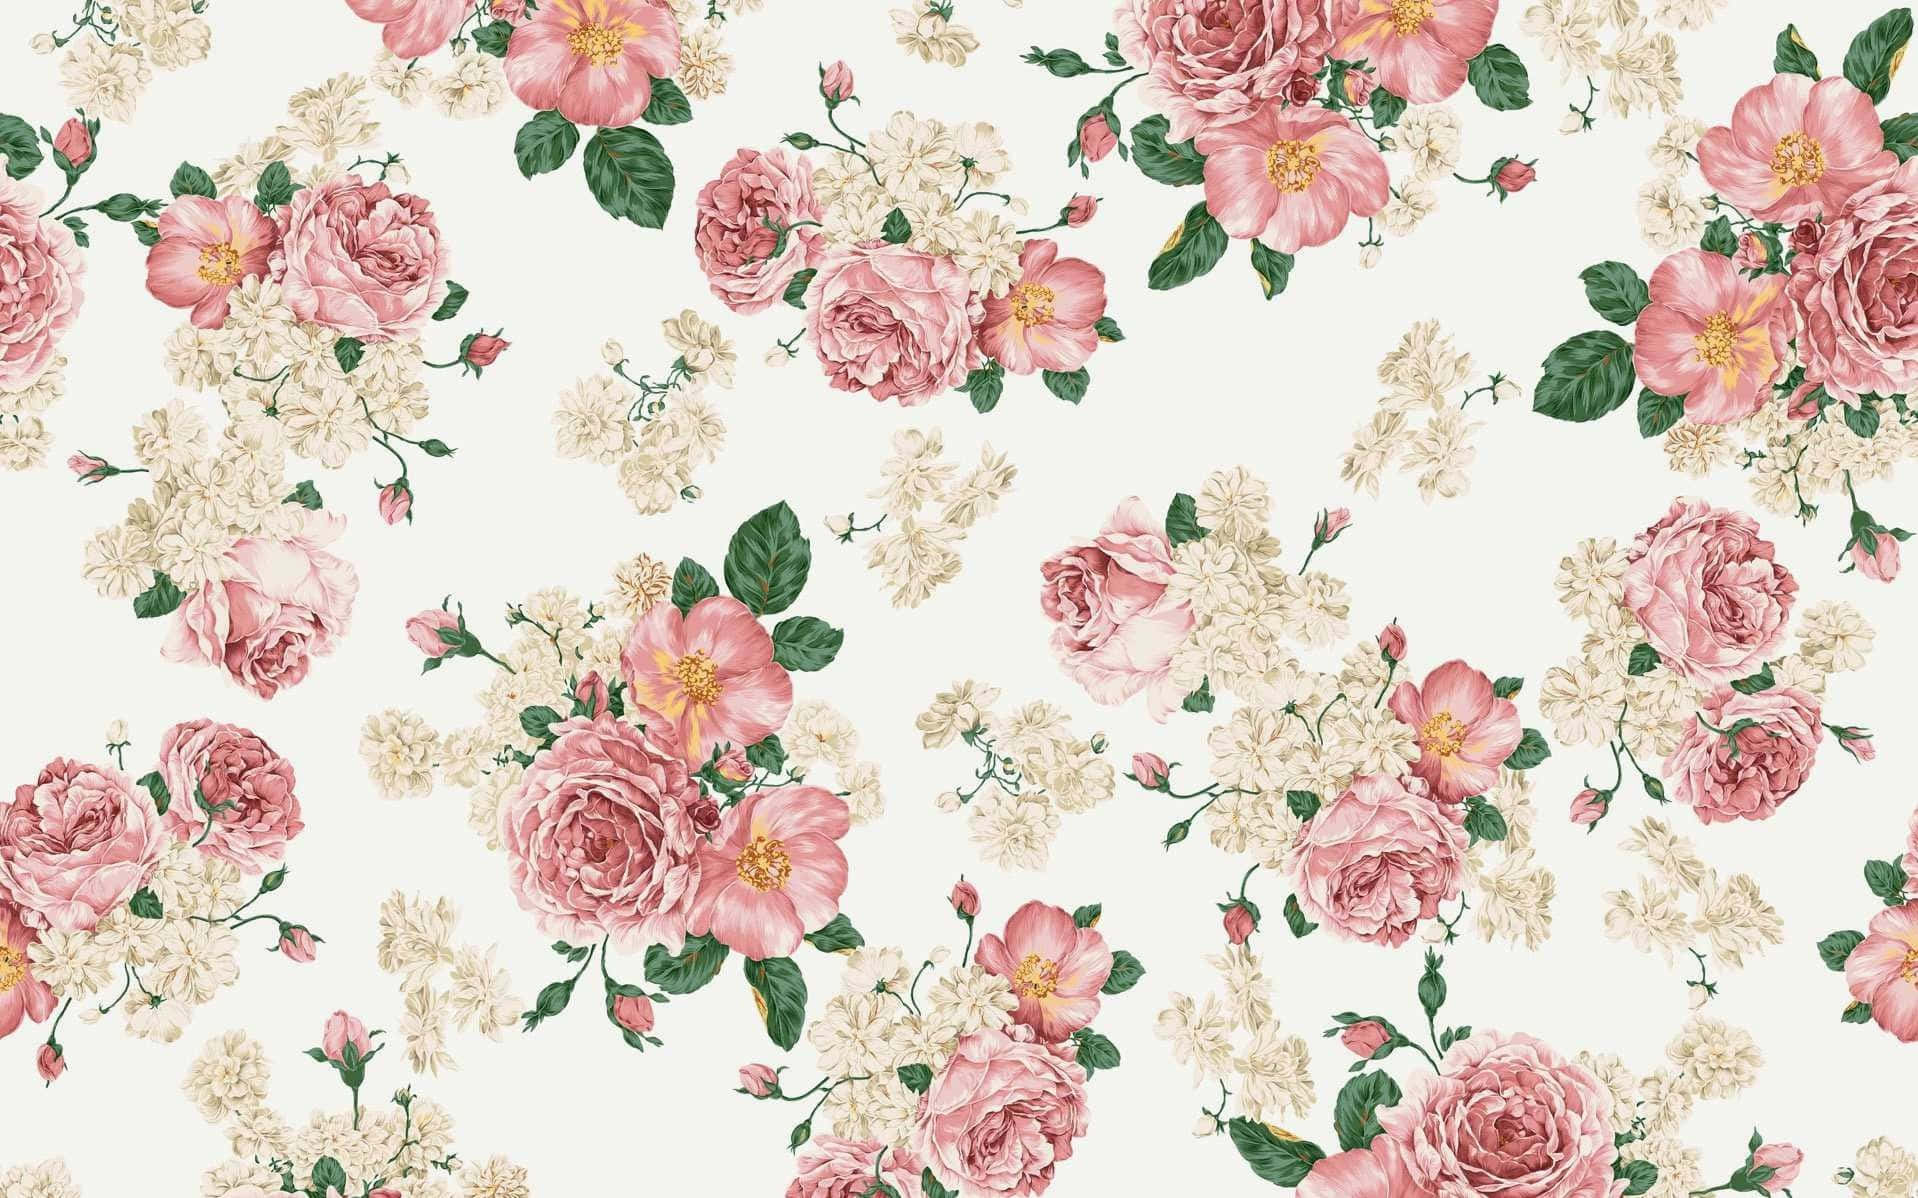 Umpapel De Parede Floral Rosa Com Flores Brancas